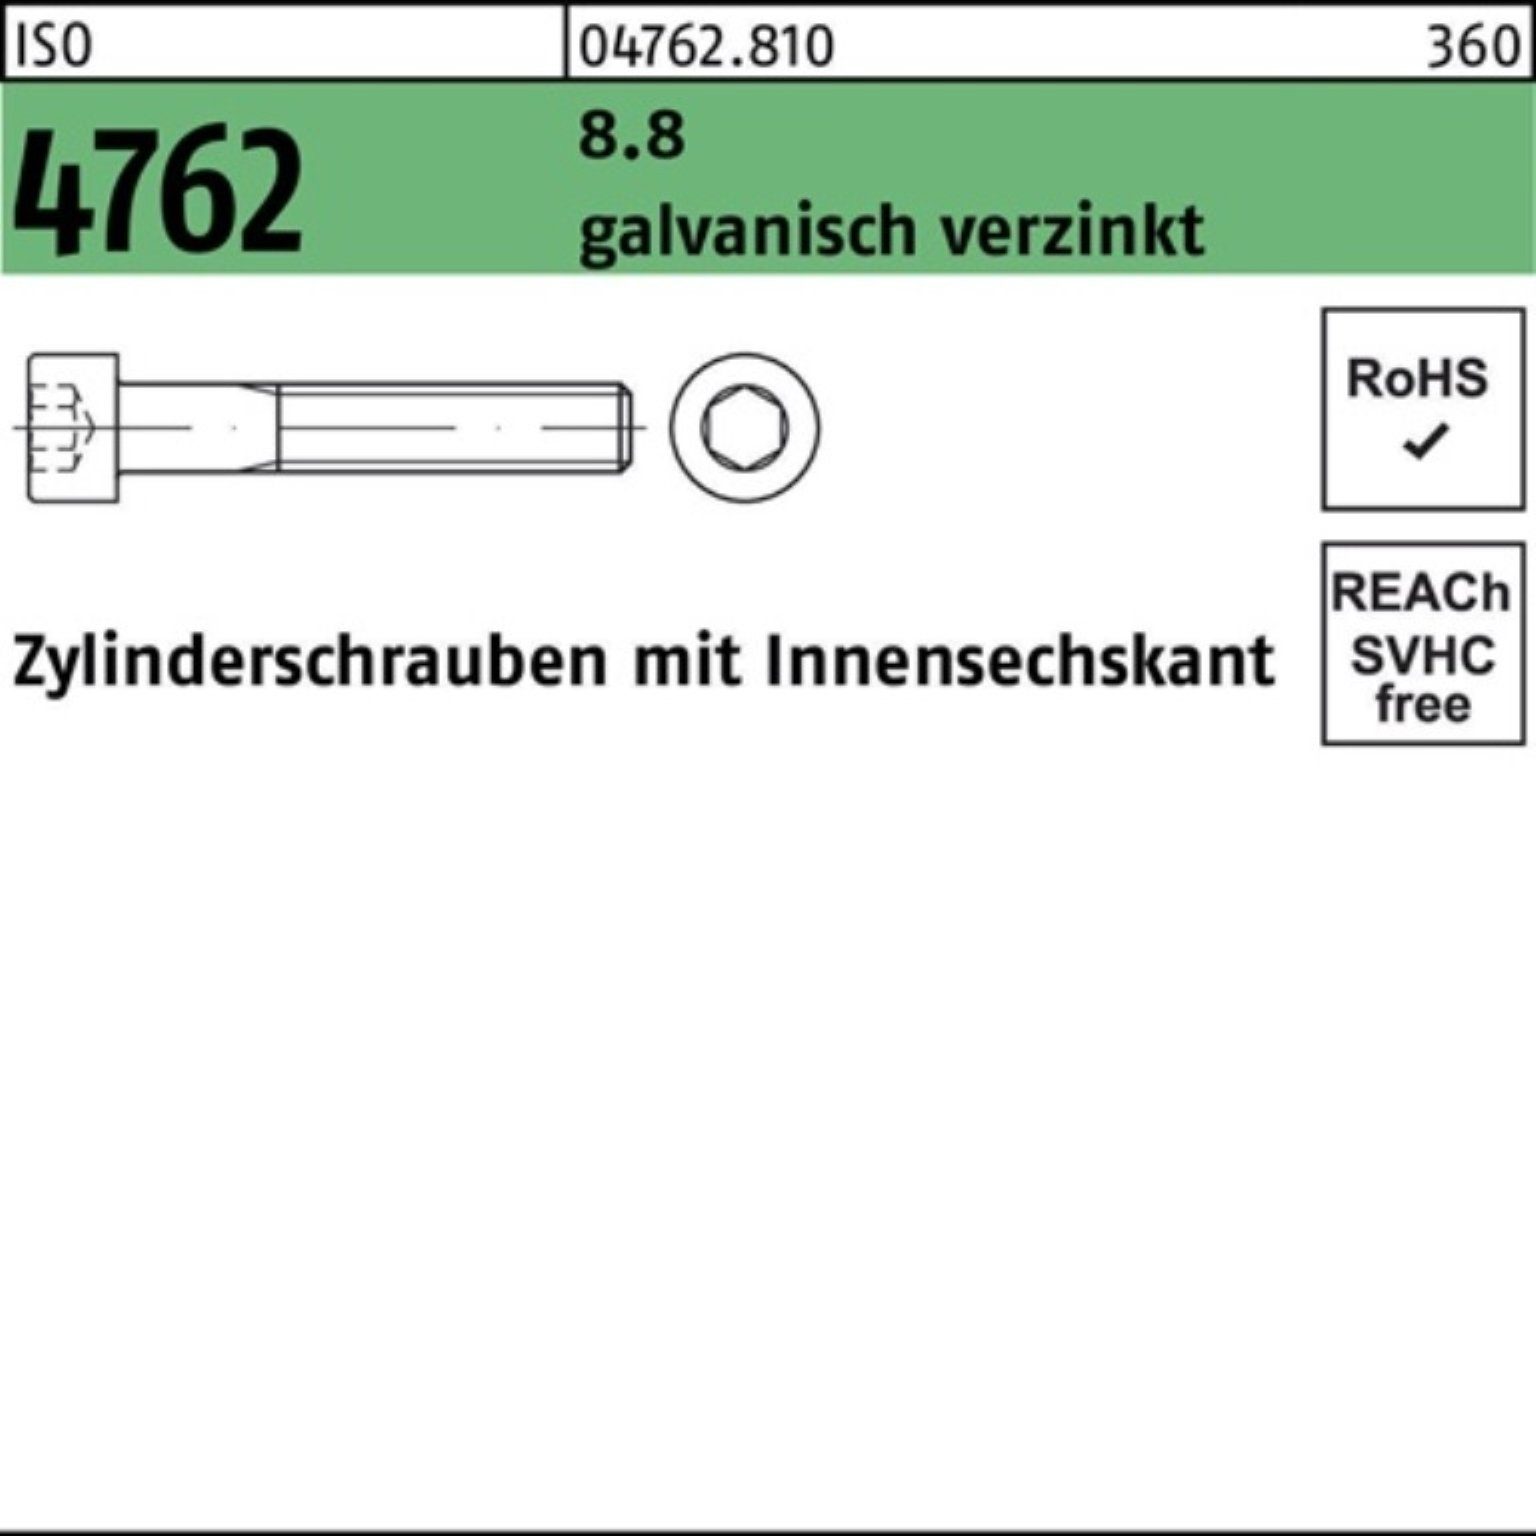 galv.verz. ISO Zylinderschraube Pack 4762 100 Zylinderschraube Reyher Innen-6kt 8.8 M4x6 100er